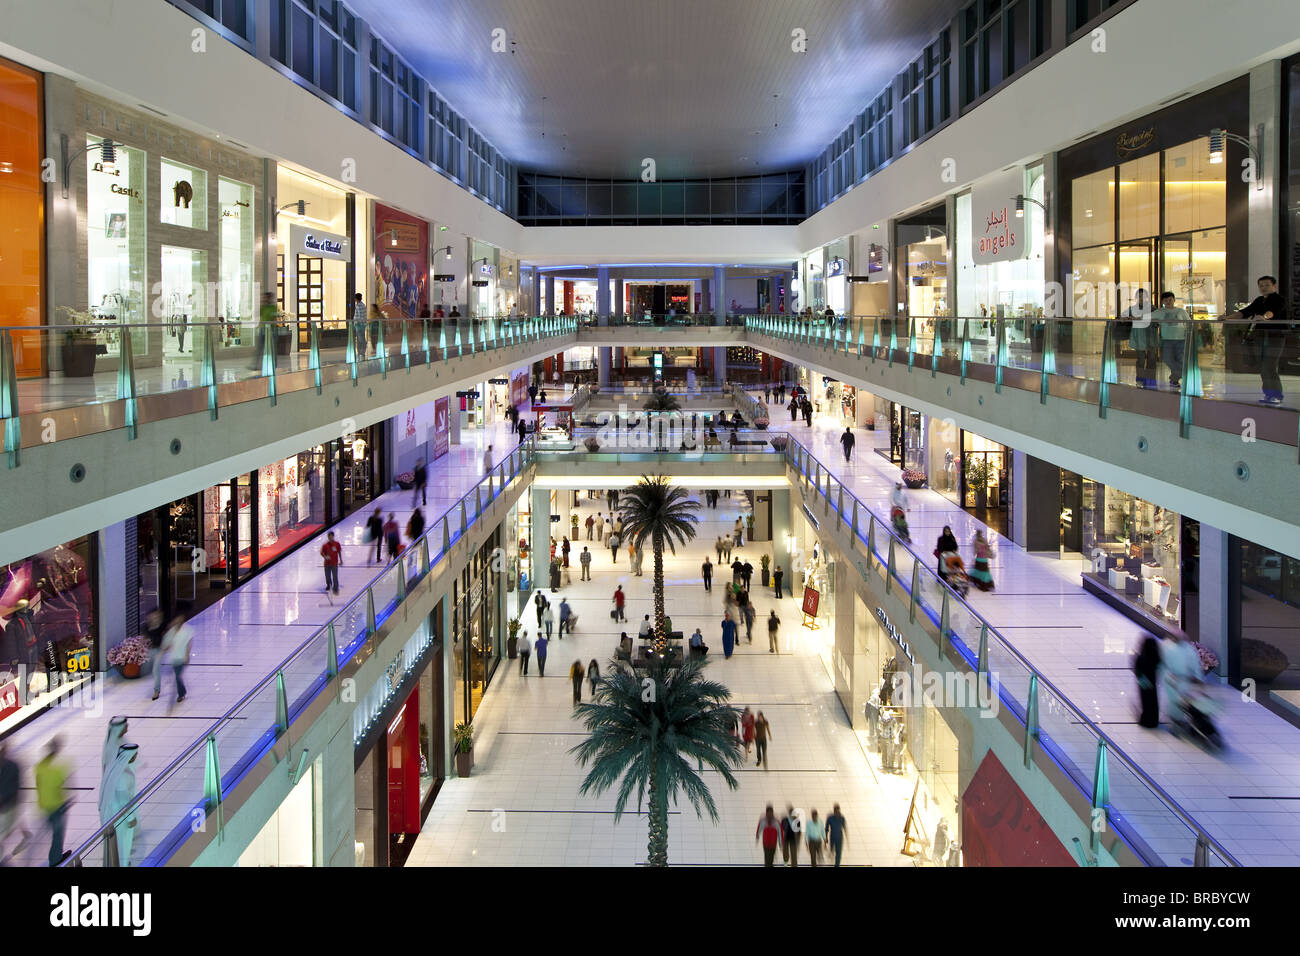 Le Dubai Mall, le plus grand centre commercial du monde avec 1200 magasins, partie de la complexe Burj Khalifa, DUBAÏ, ÉMIRATS ARABES UNIS Banque D'Images